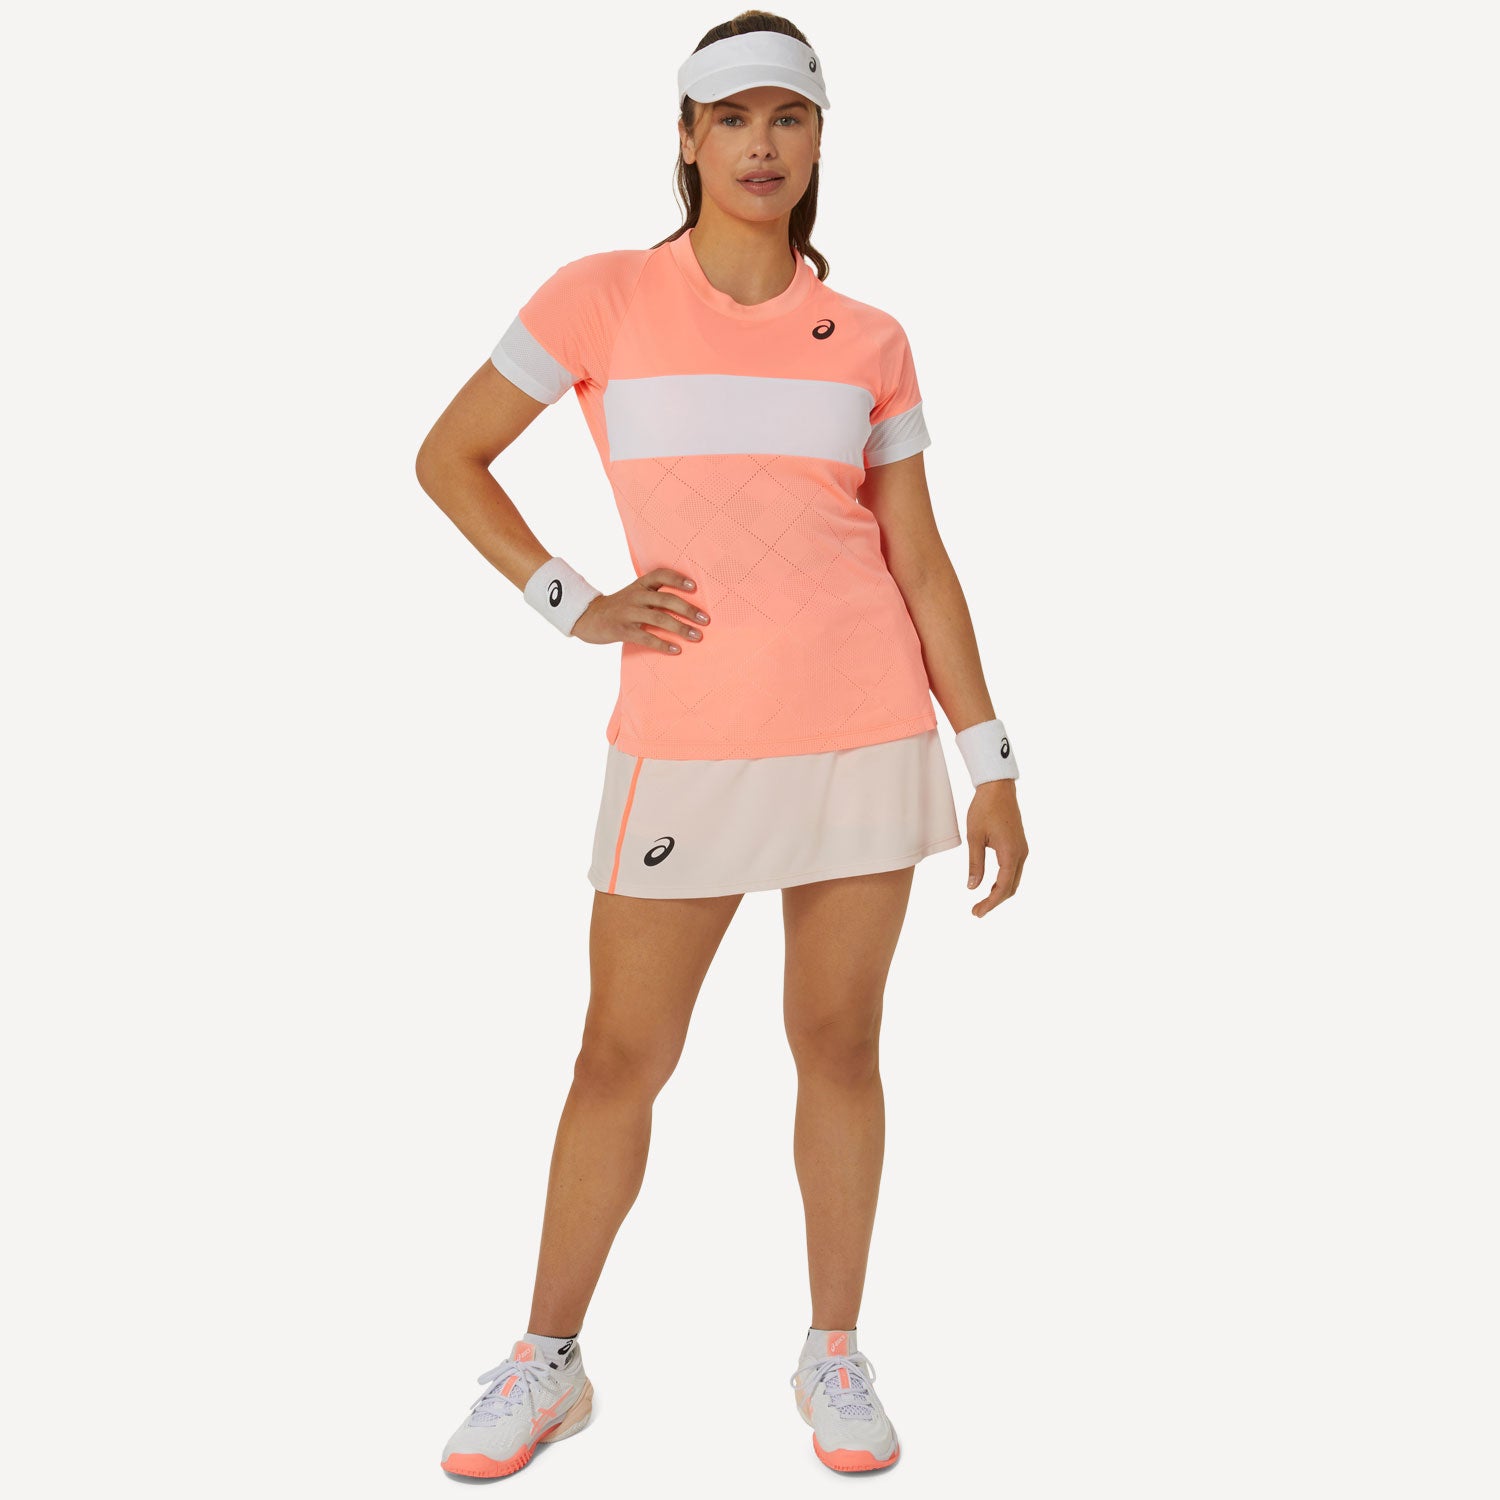 ASICS Game Women's Tennis Shirt - Orange (7)